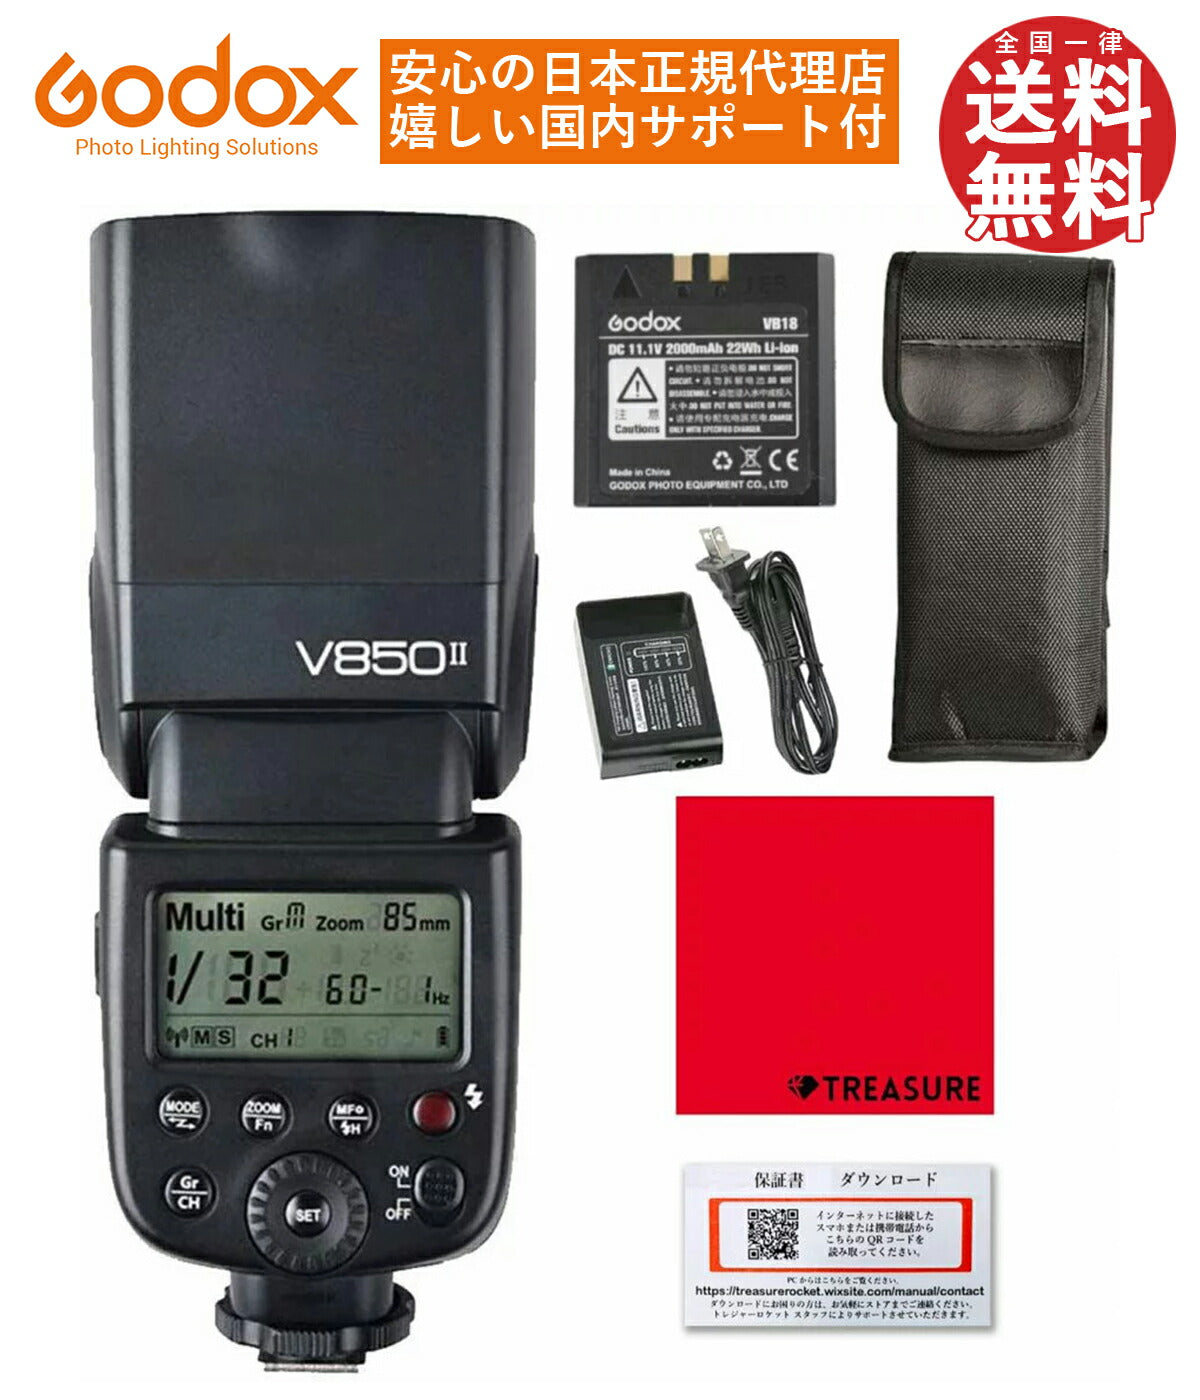 日本正規代理店 Godox Ving V850II スピードライト ストロボ GN60 1/8000s HSS 汎用シュー 技適マーク  [キャノン/ニコン/ペンタックス/オリンパス/日本語説明書/クロス/セット品]